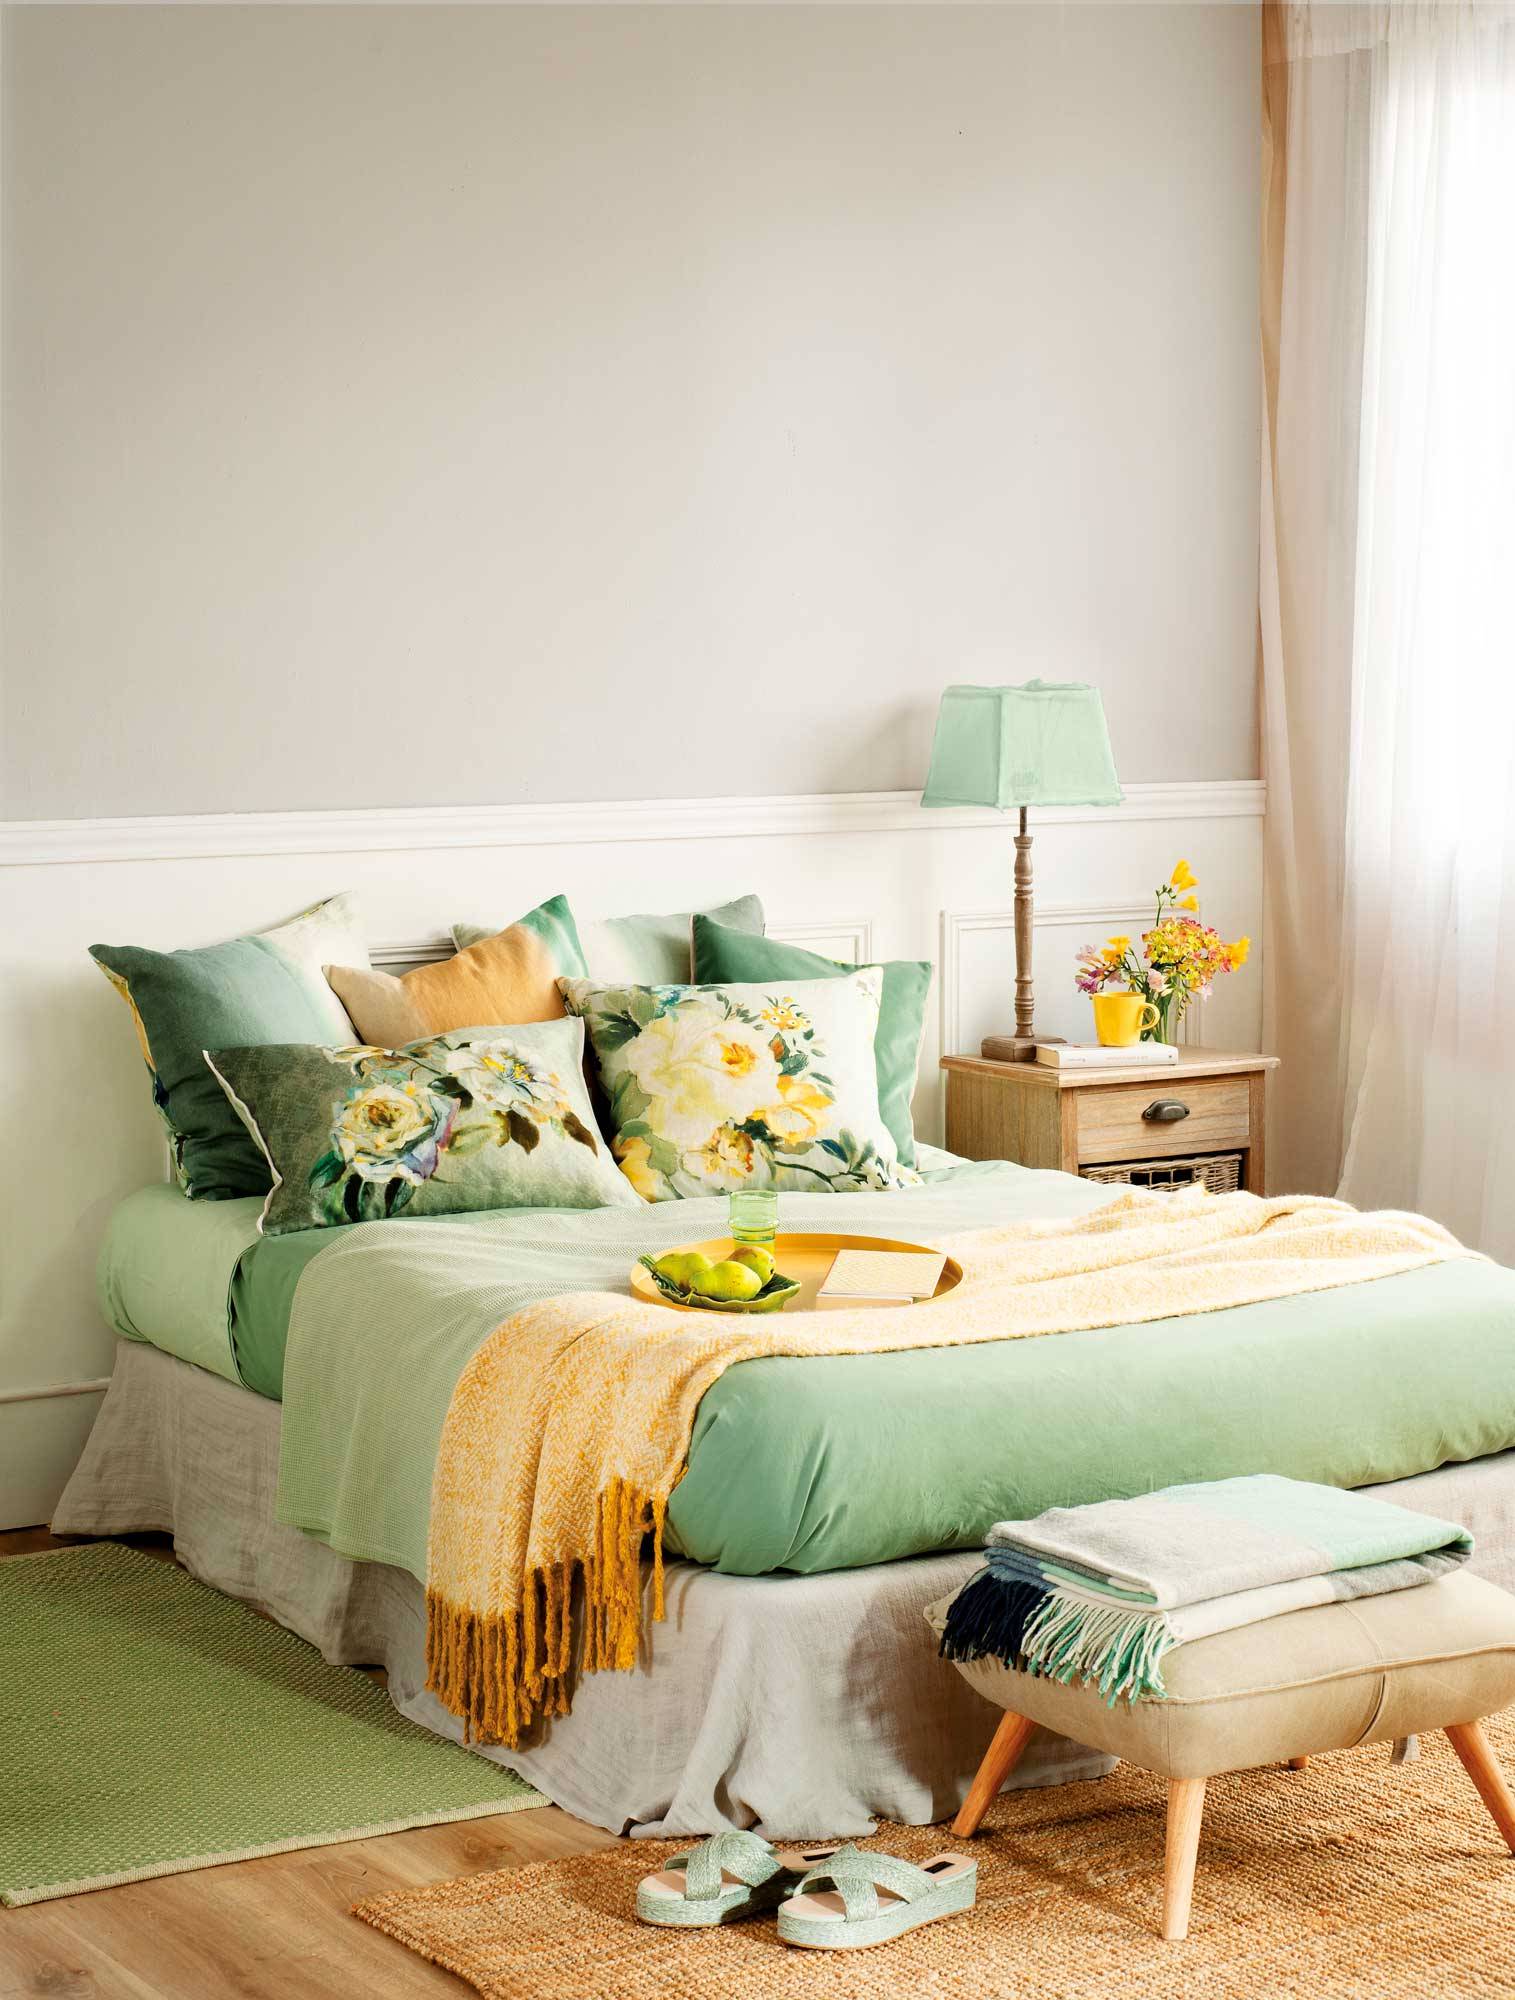 dormitorio-decorado-en-tonos-verdes-00486918